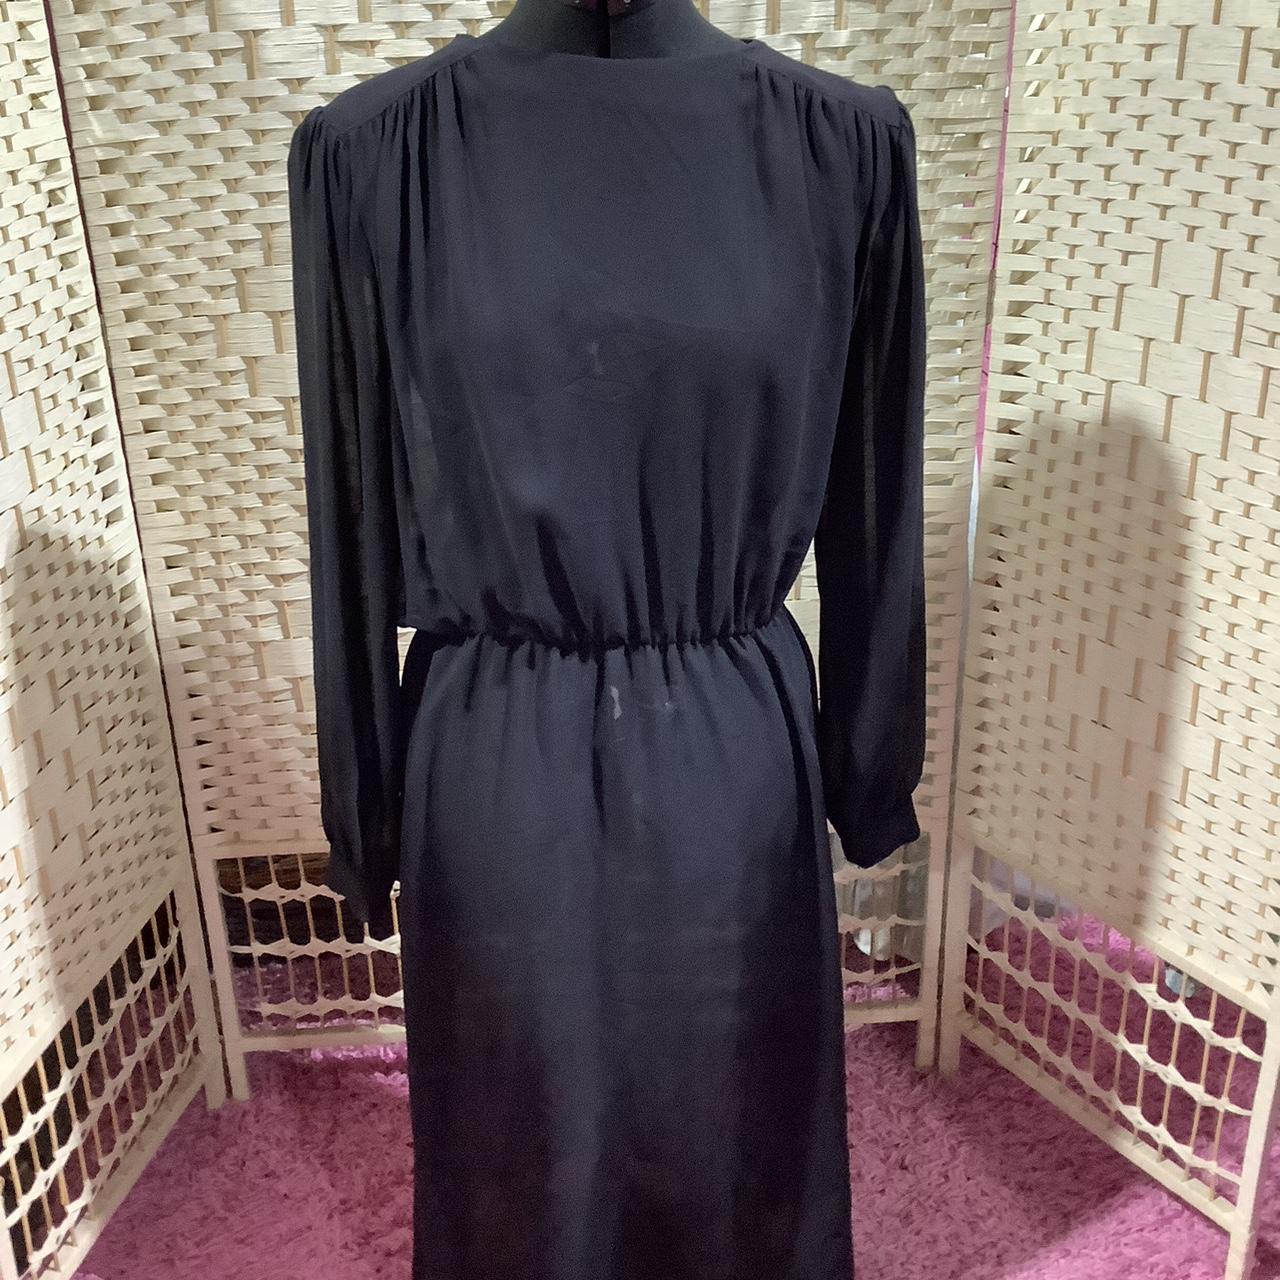 Vintage 1980s sheer fabric black dress Would need... - Depop